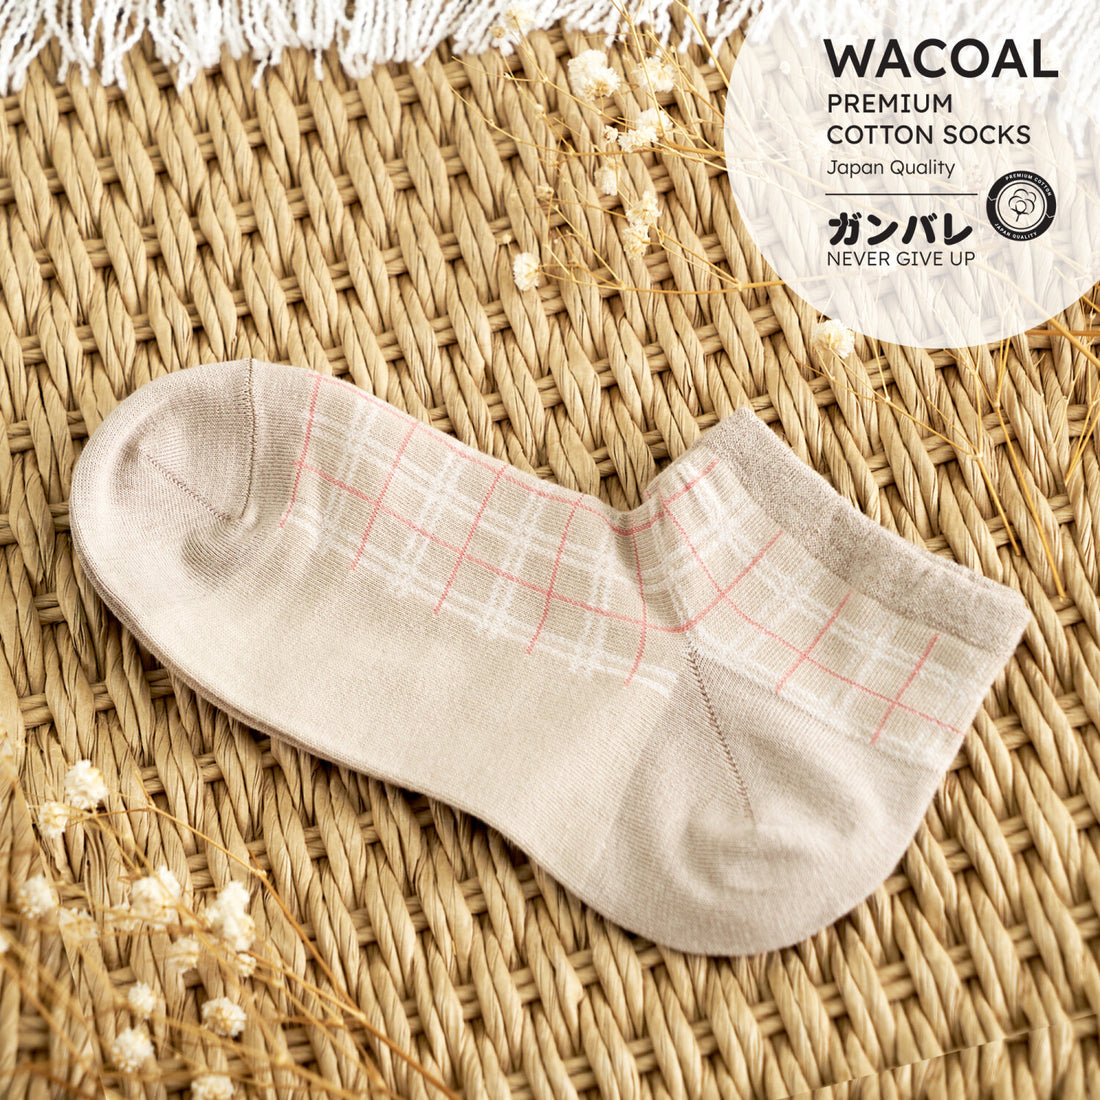 ถุงเท้าข้อสั้น Premium Cotton Socks Selected by Wacoal รุ่น WW110300 สีเนื้อ (NN)